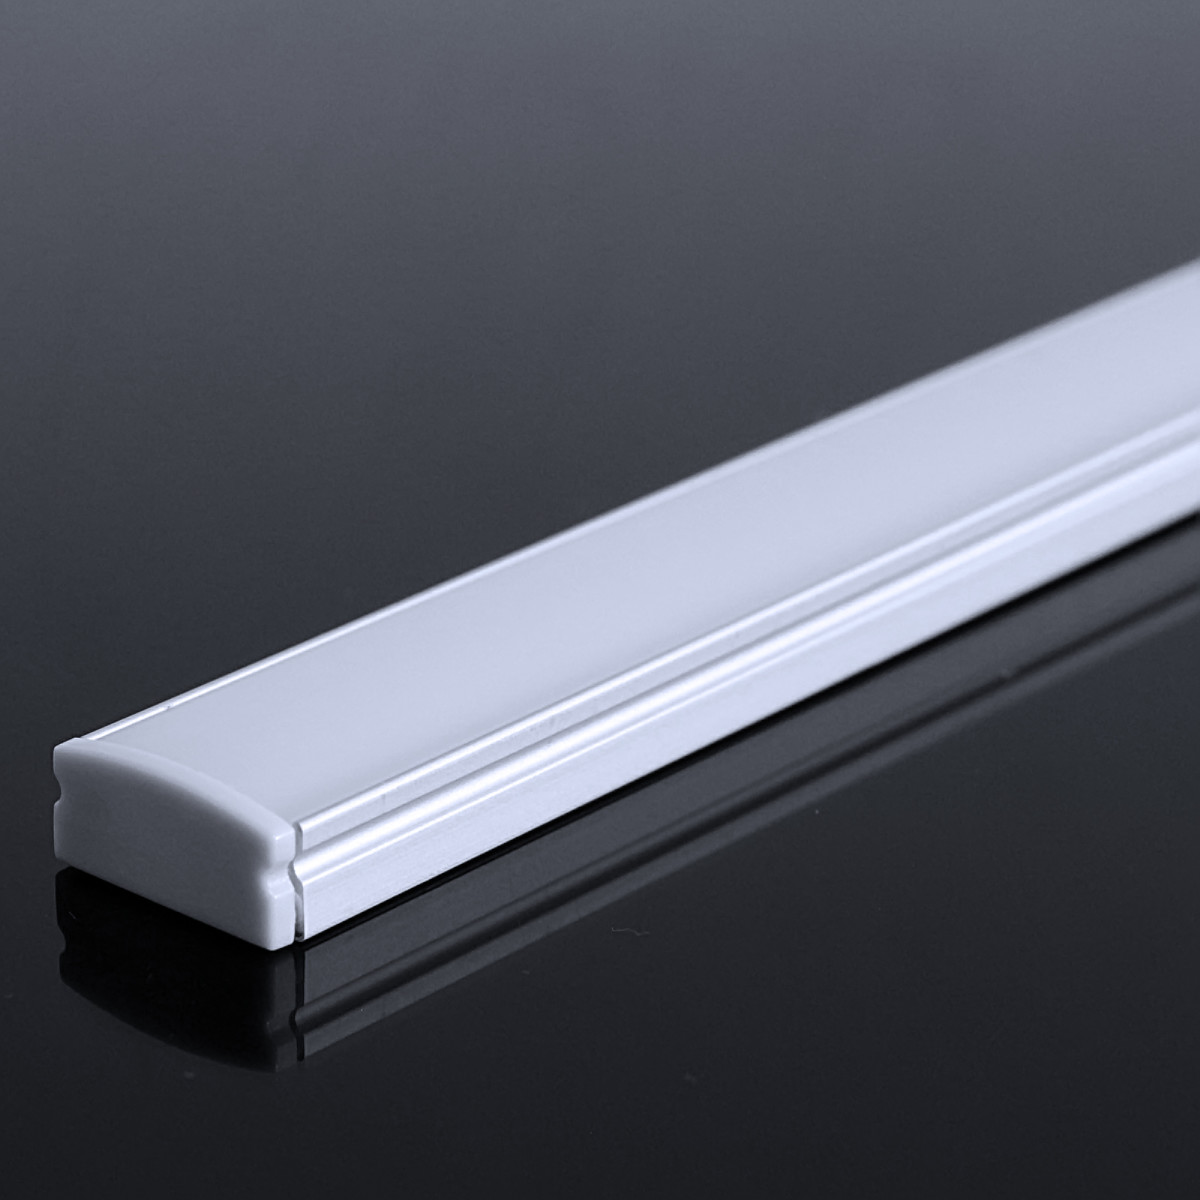 LED Flachprofil "Slim-Line" | Abdeckung diffus | Zuschnitt auf 132cm |